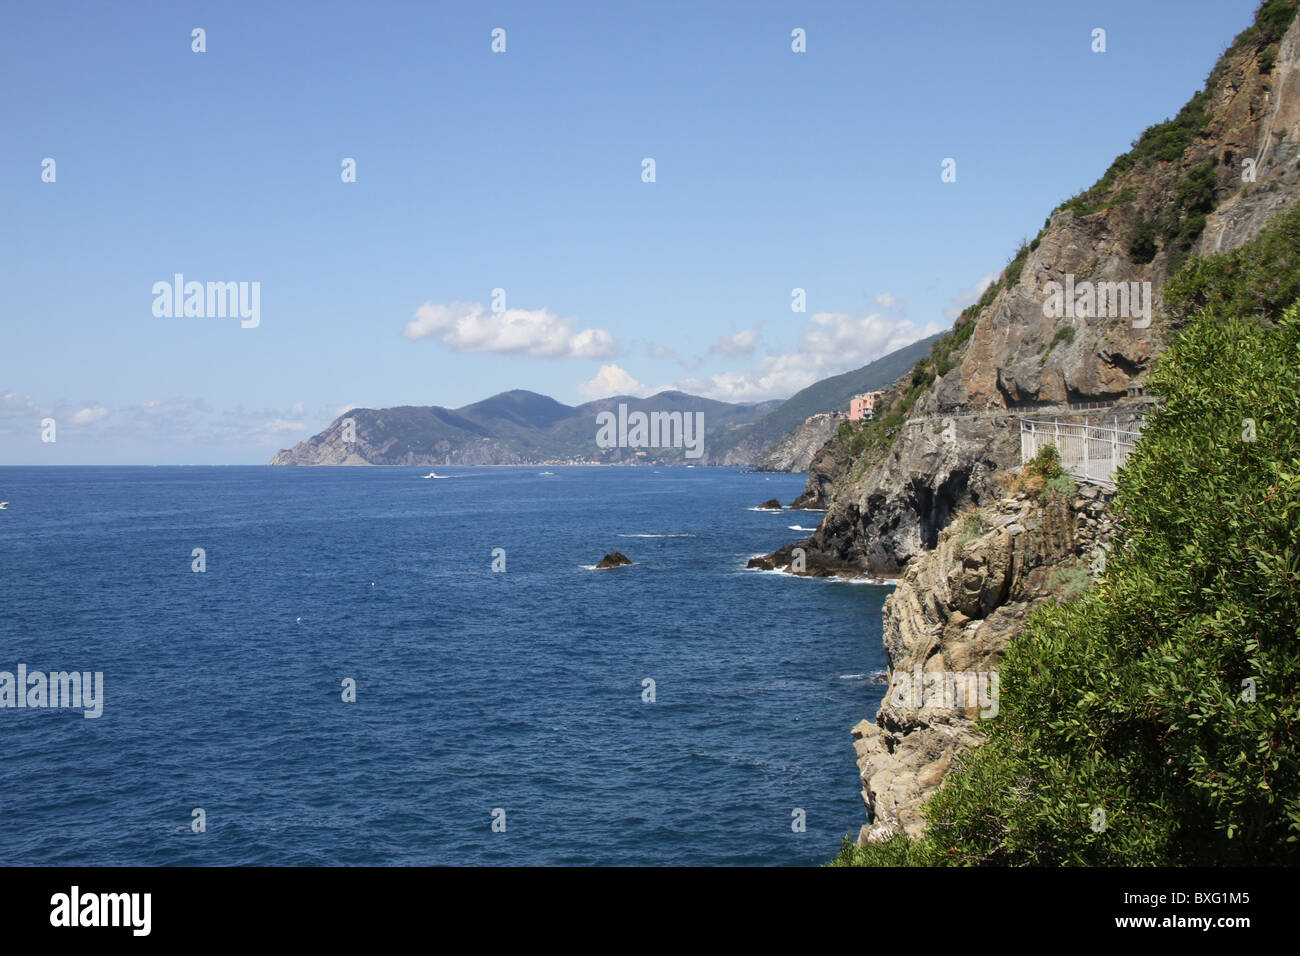 Via dell'amore between Riomaggiore and Vernazza, Cinque Terre, Italy Stock Photo